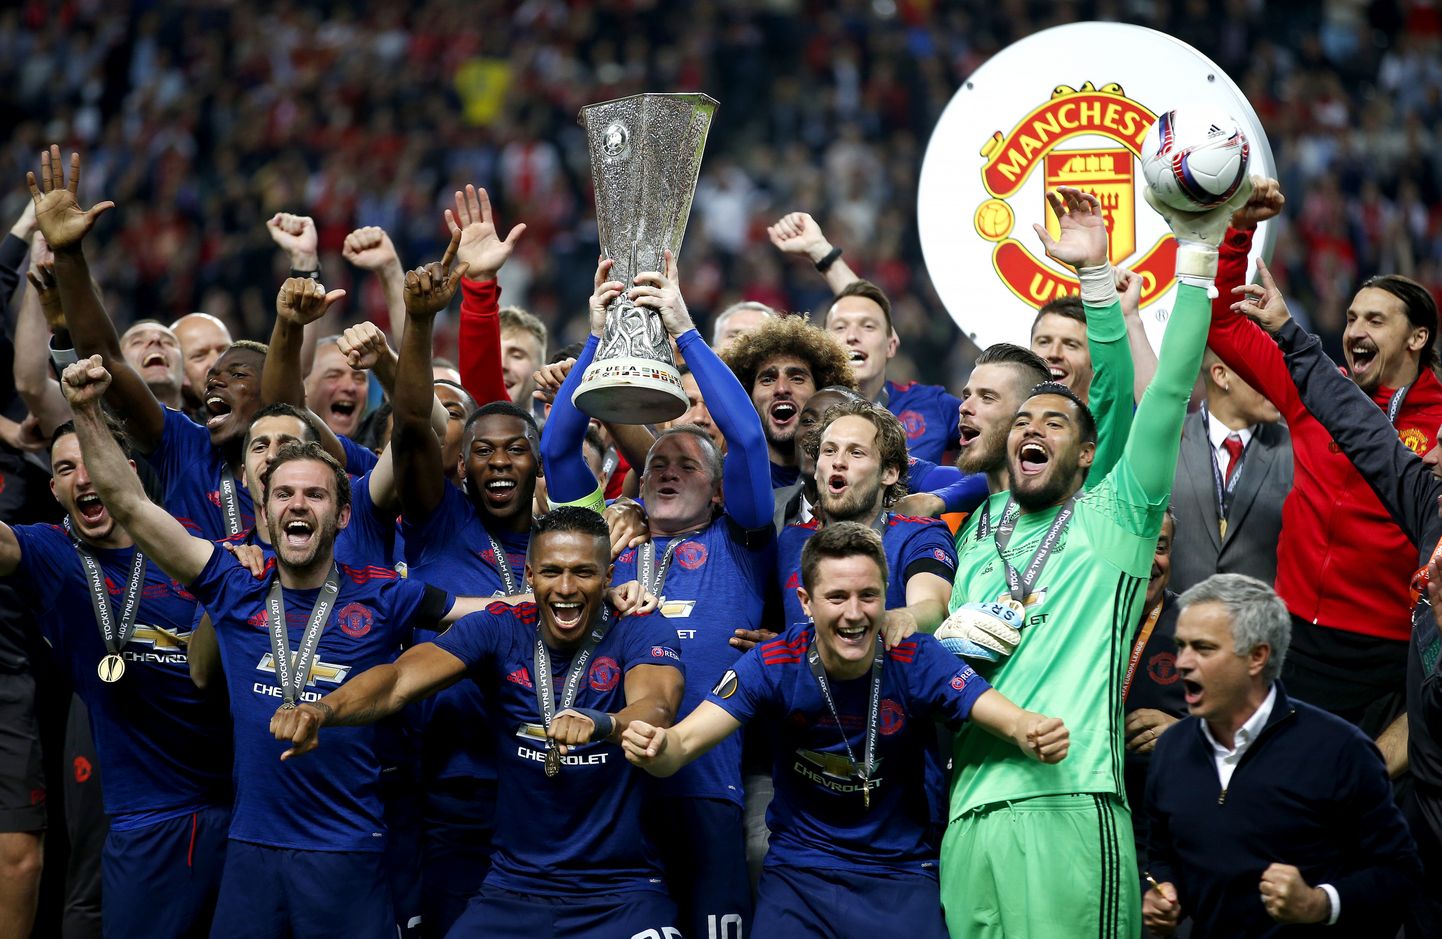 Möödunud kevadel krooniti Euroopa liiga võitjaks Manchester United. Milline meeskond võidutseb 16. mail 2018?